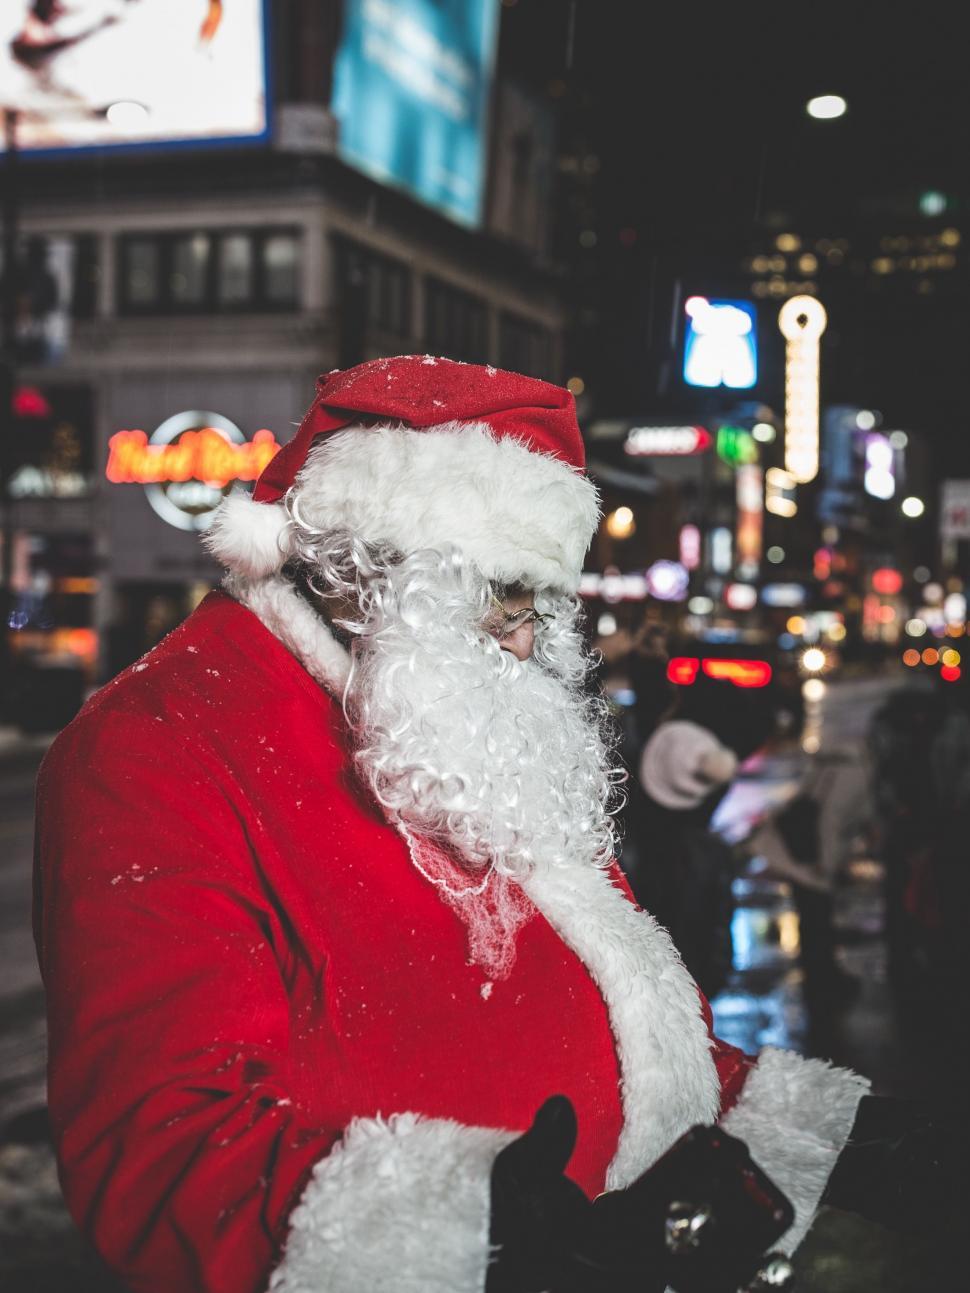 Free Image of Santa Claus Walking on City Street 